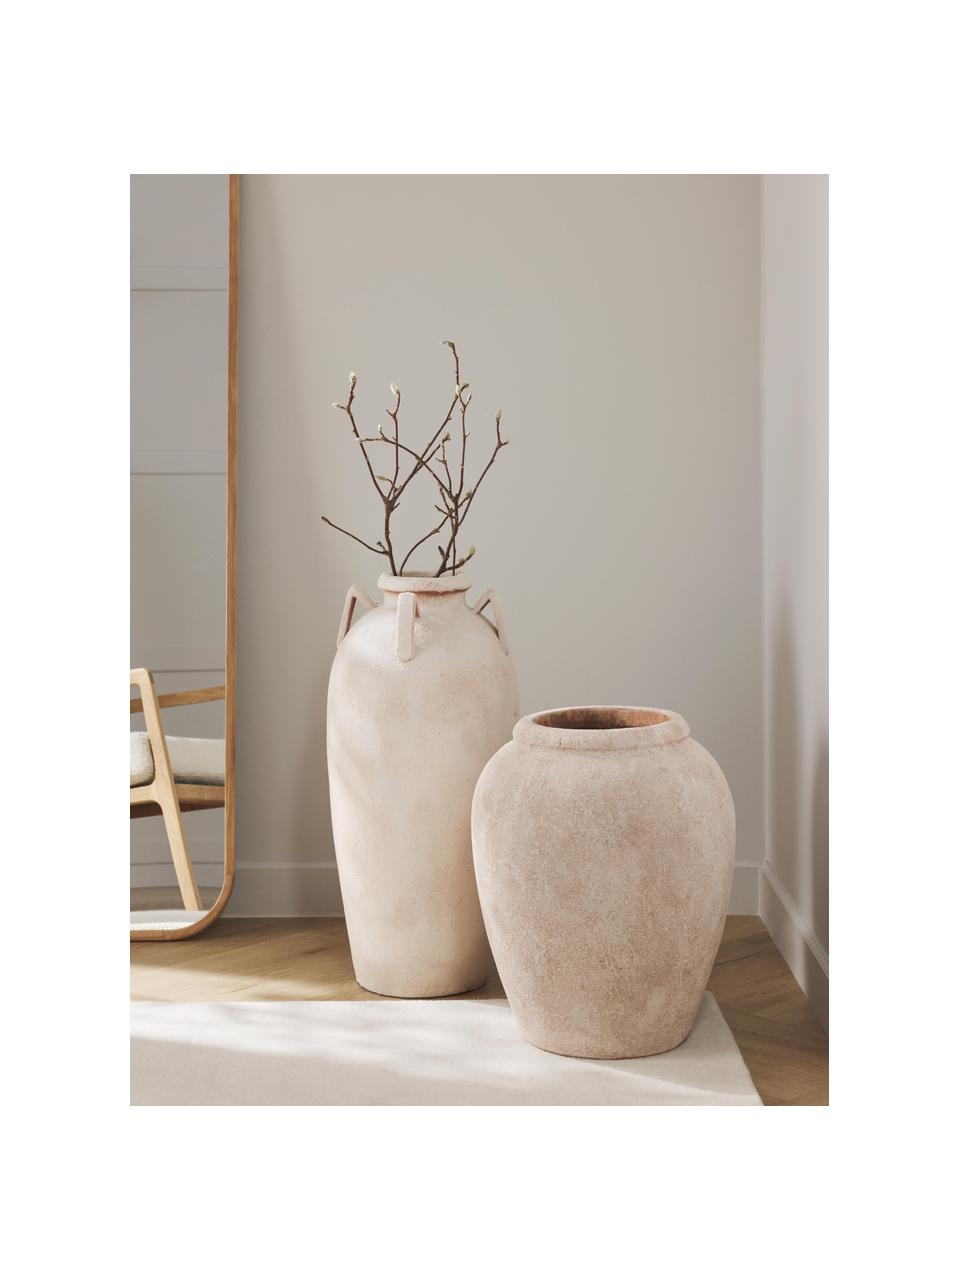 Grand vase à poser au sol, finition sablée Leana, Terracotta, Terracotta, Ø 41 x haut. 50 cm